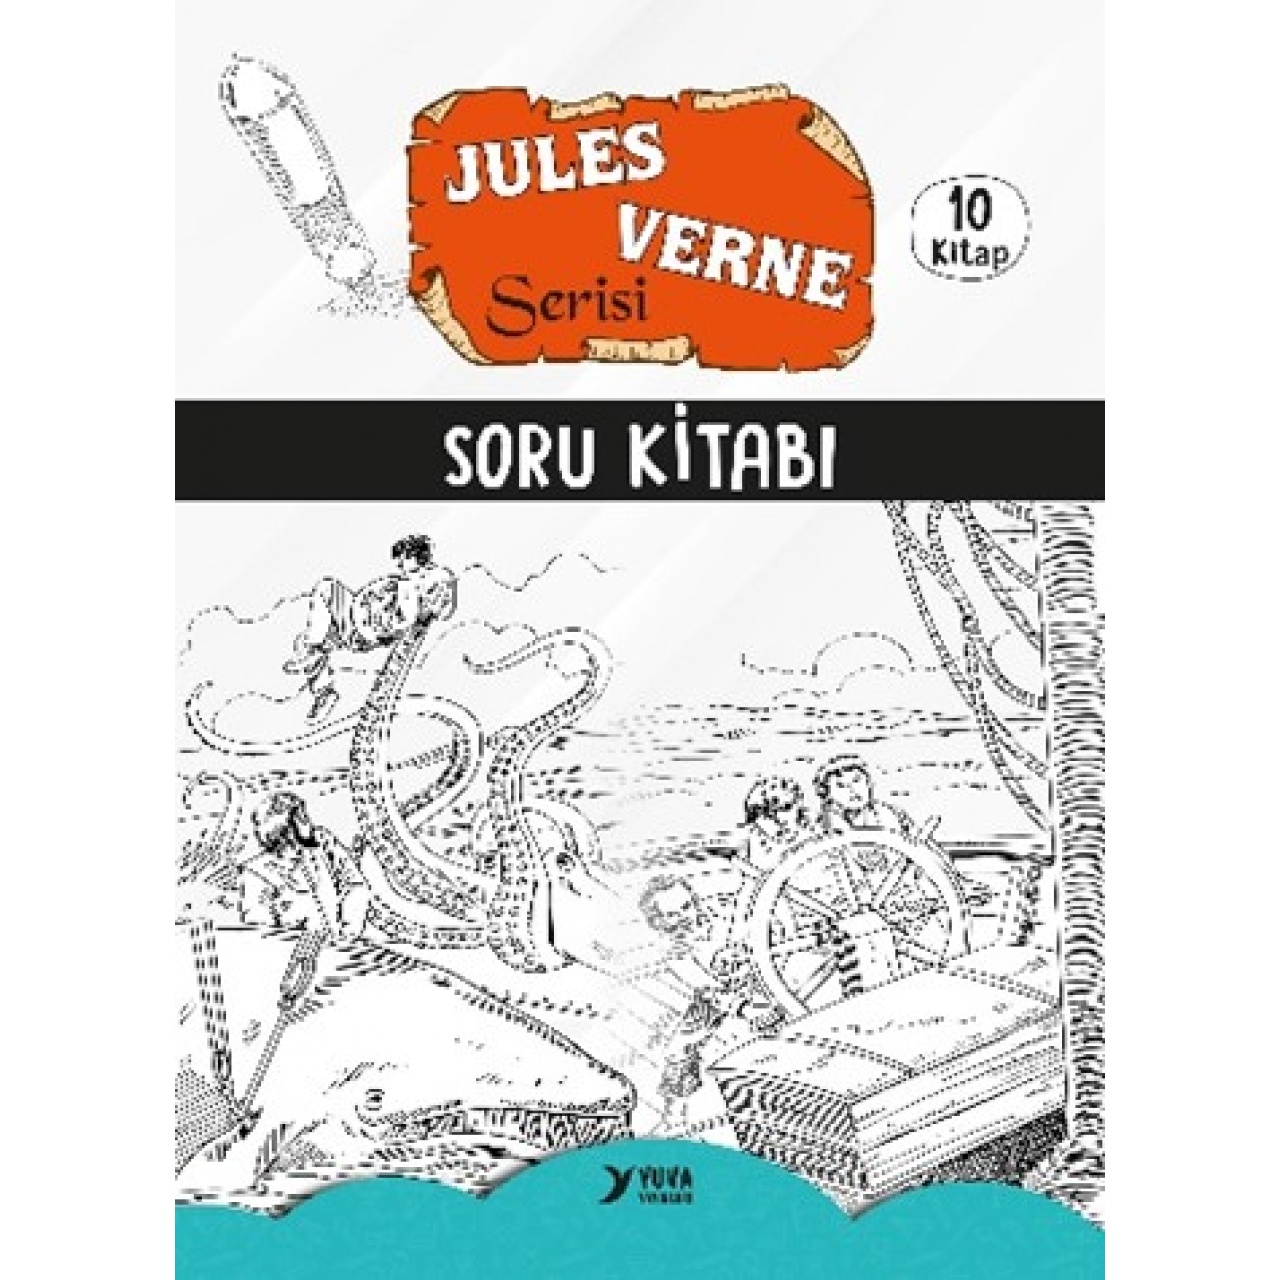 4. Sınıf Jules Verne Serisi 10 Kitap Yuva Yayınları